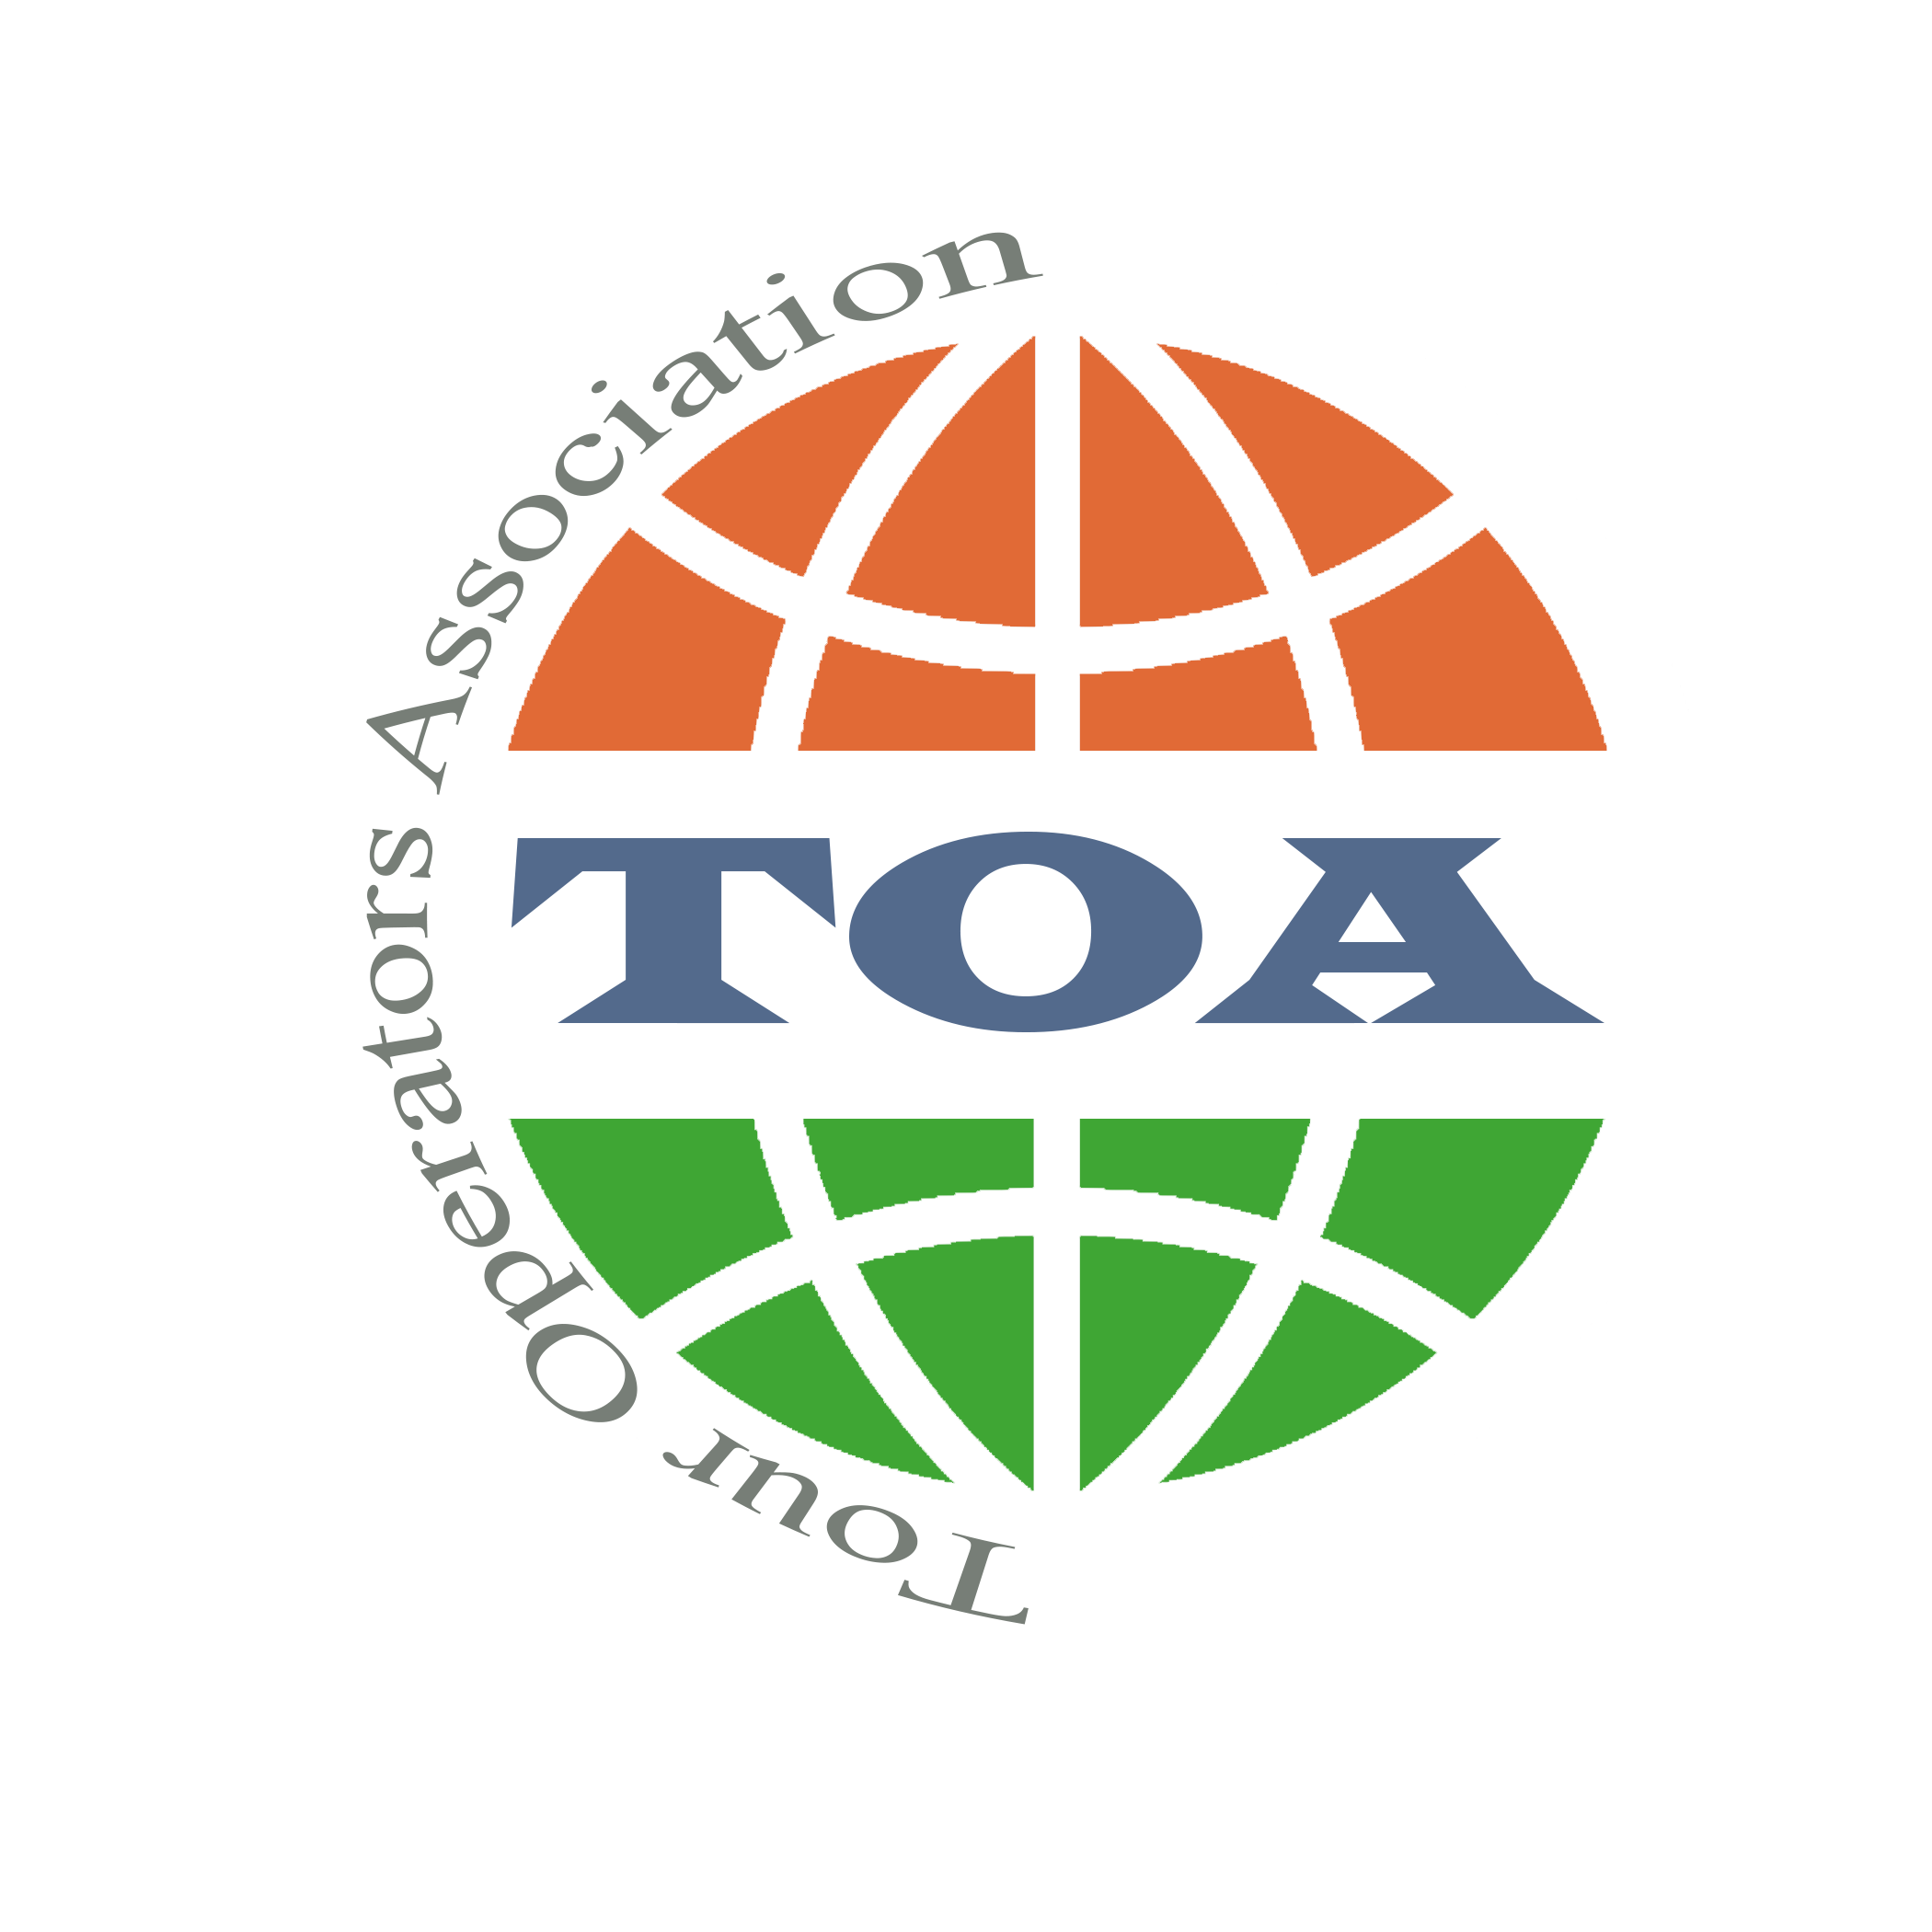 tour operators association definition